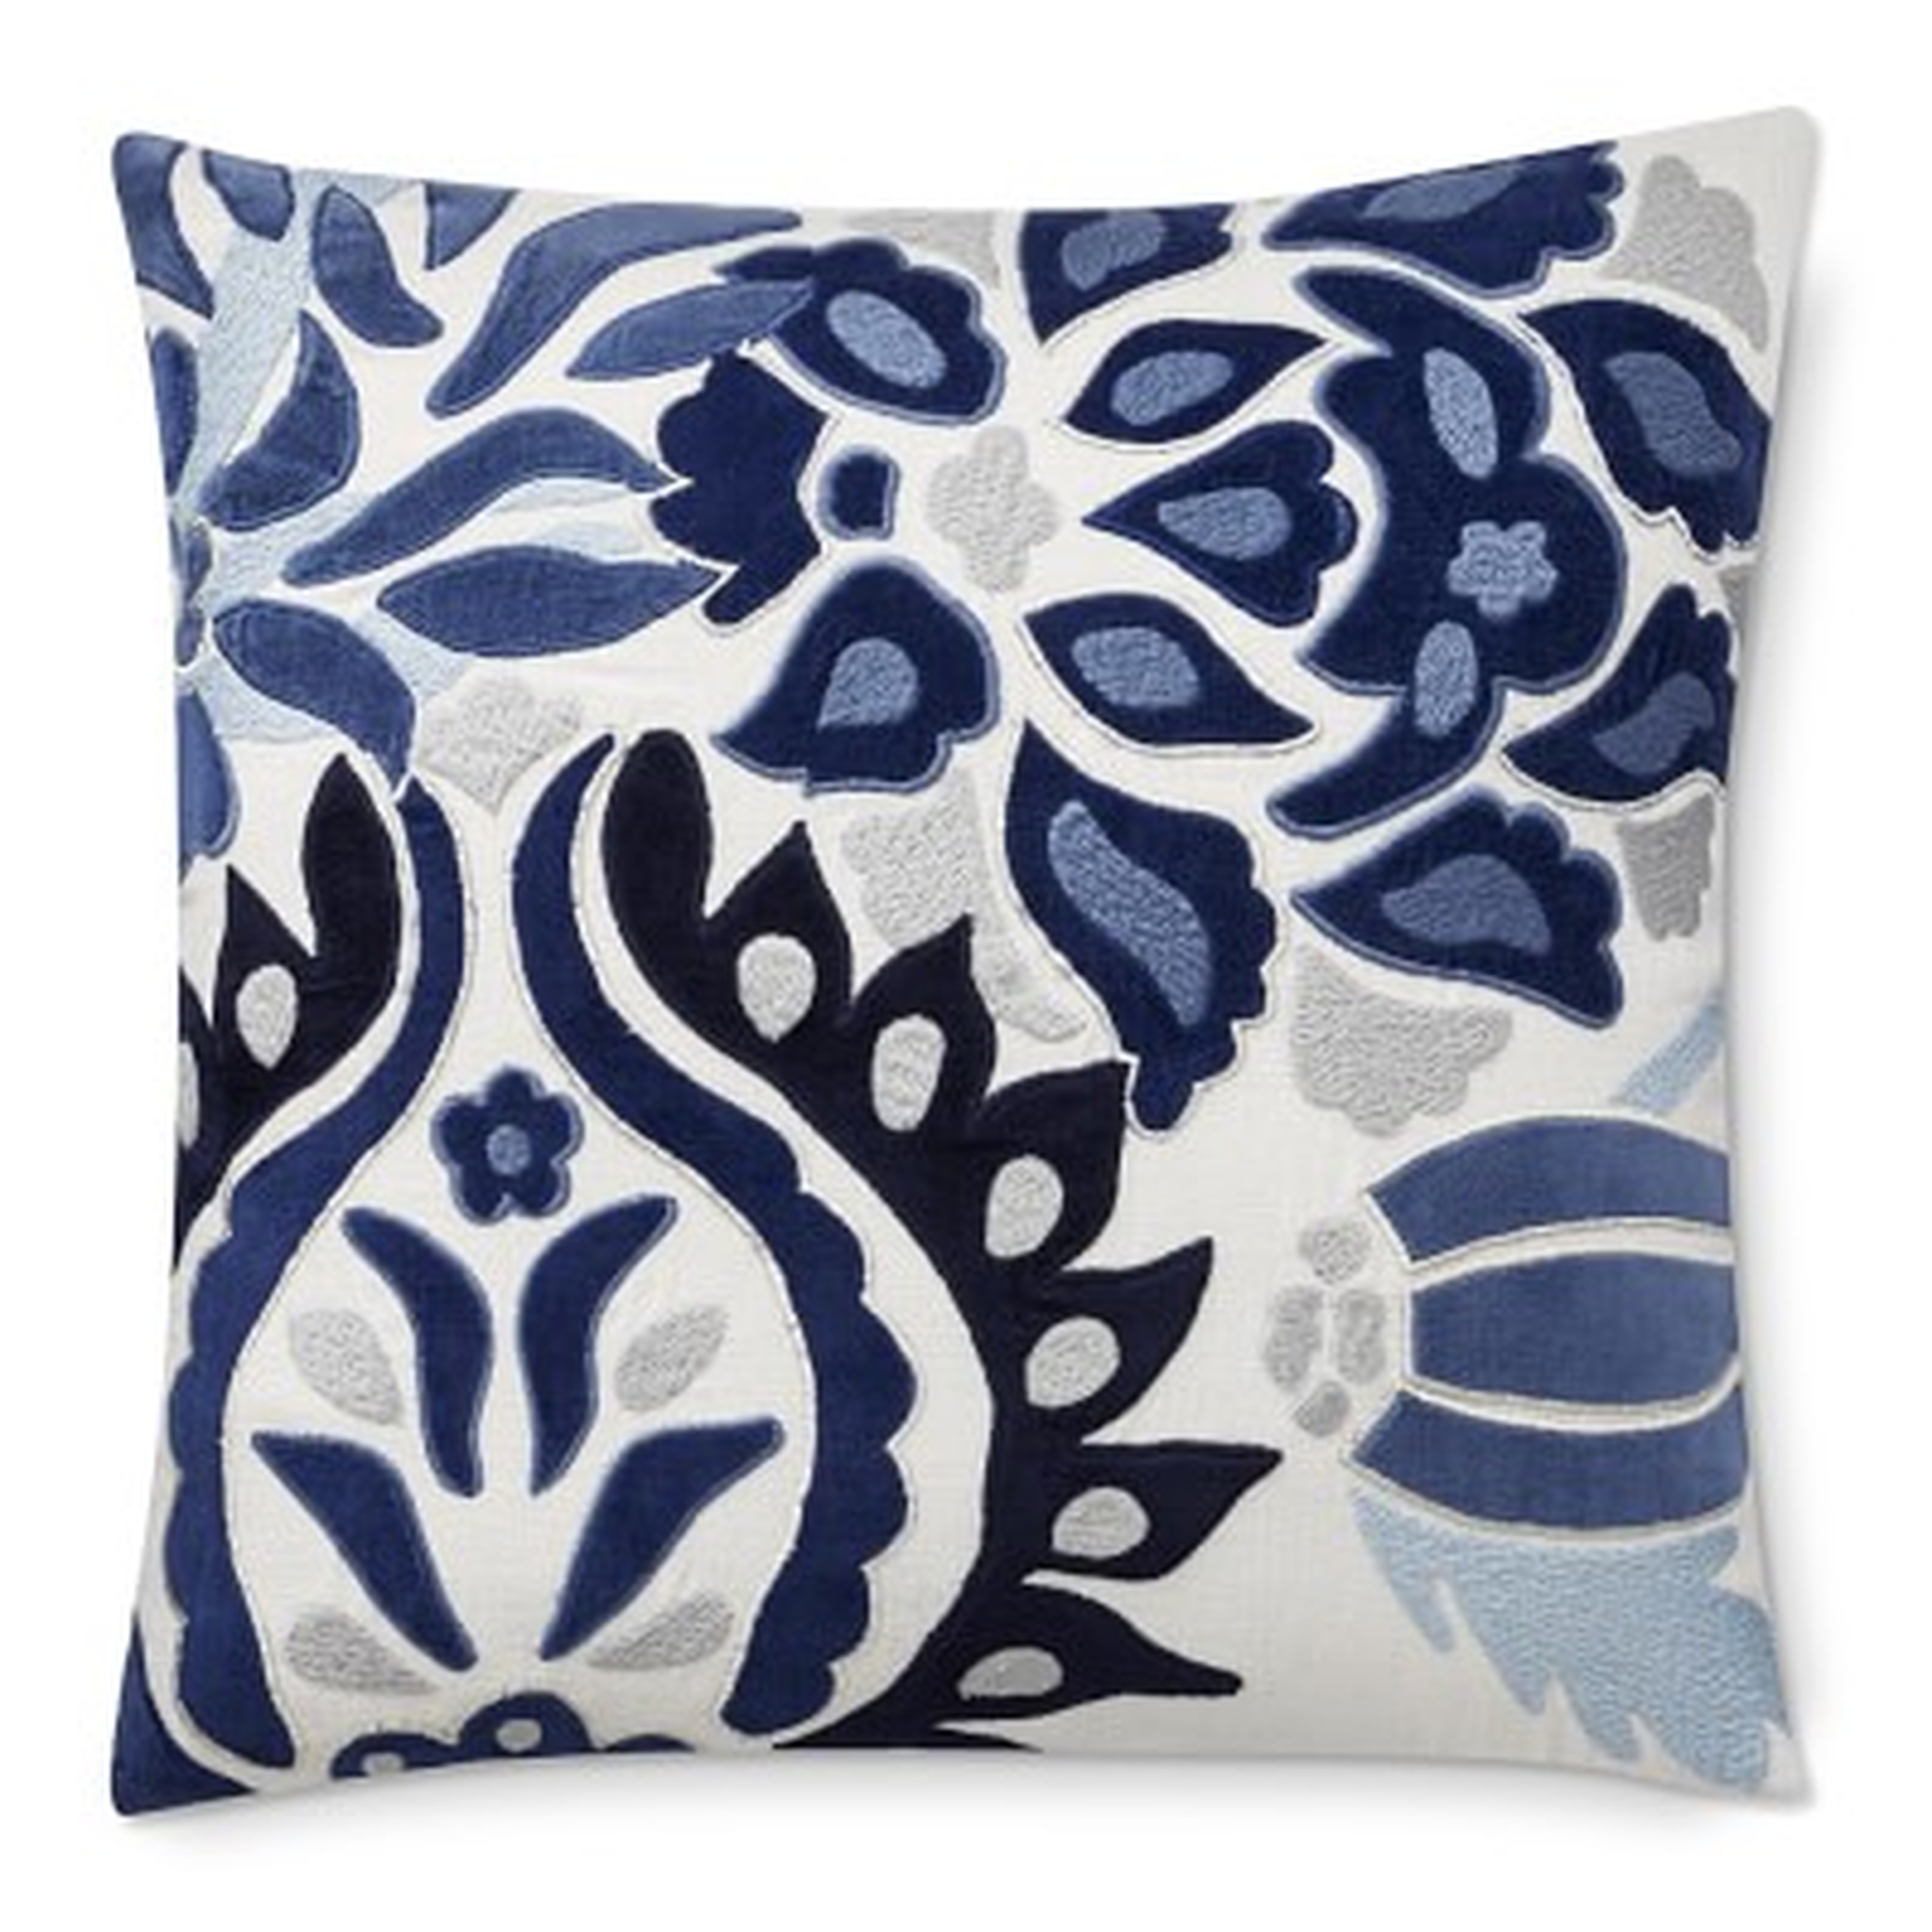 Izlara Floral Applique Pillow Cover, 20" X 20", Blue - Williams Sonoma